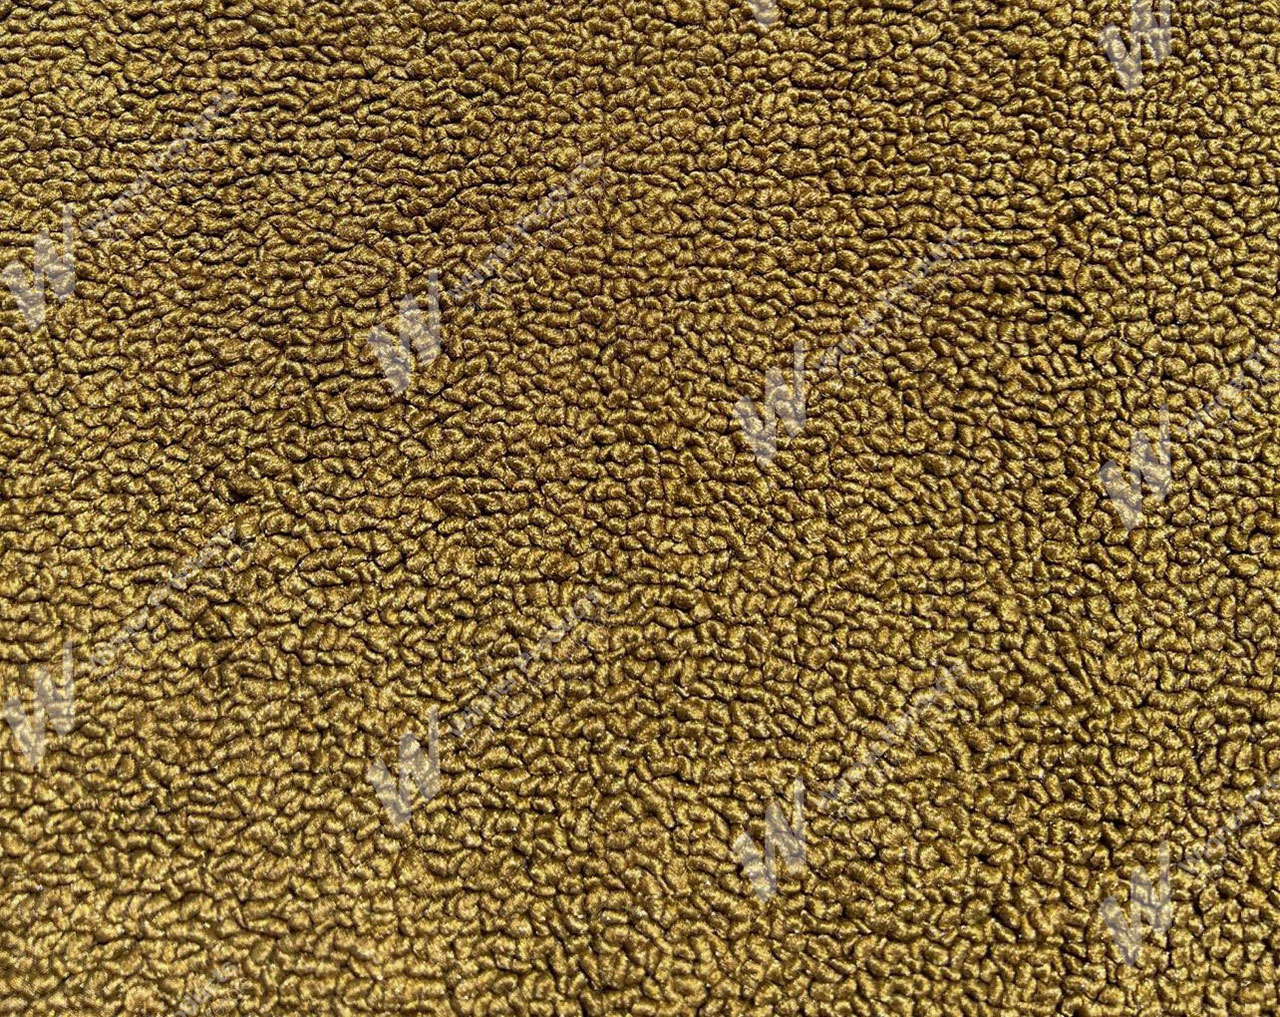 Holden Kingswood HG Kingswood Wagon 11G Antique Gold & Castillion Weave Carpet (Image 1 of 1)